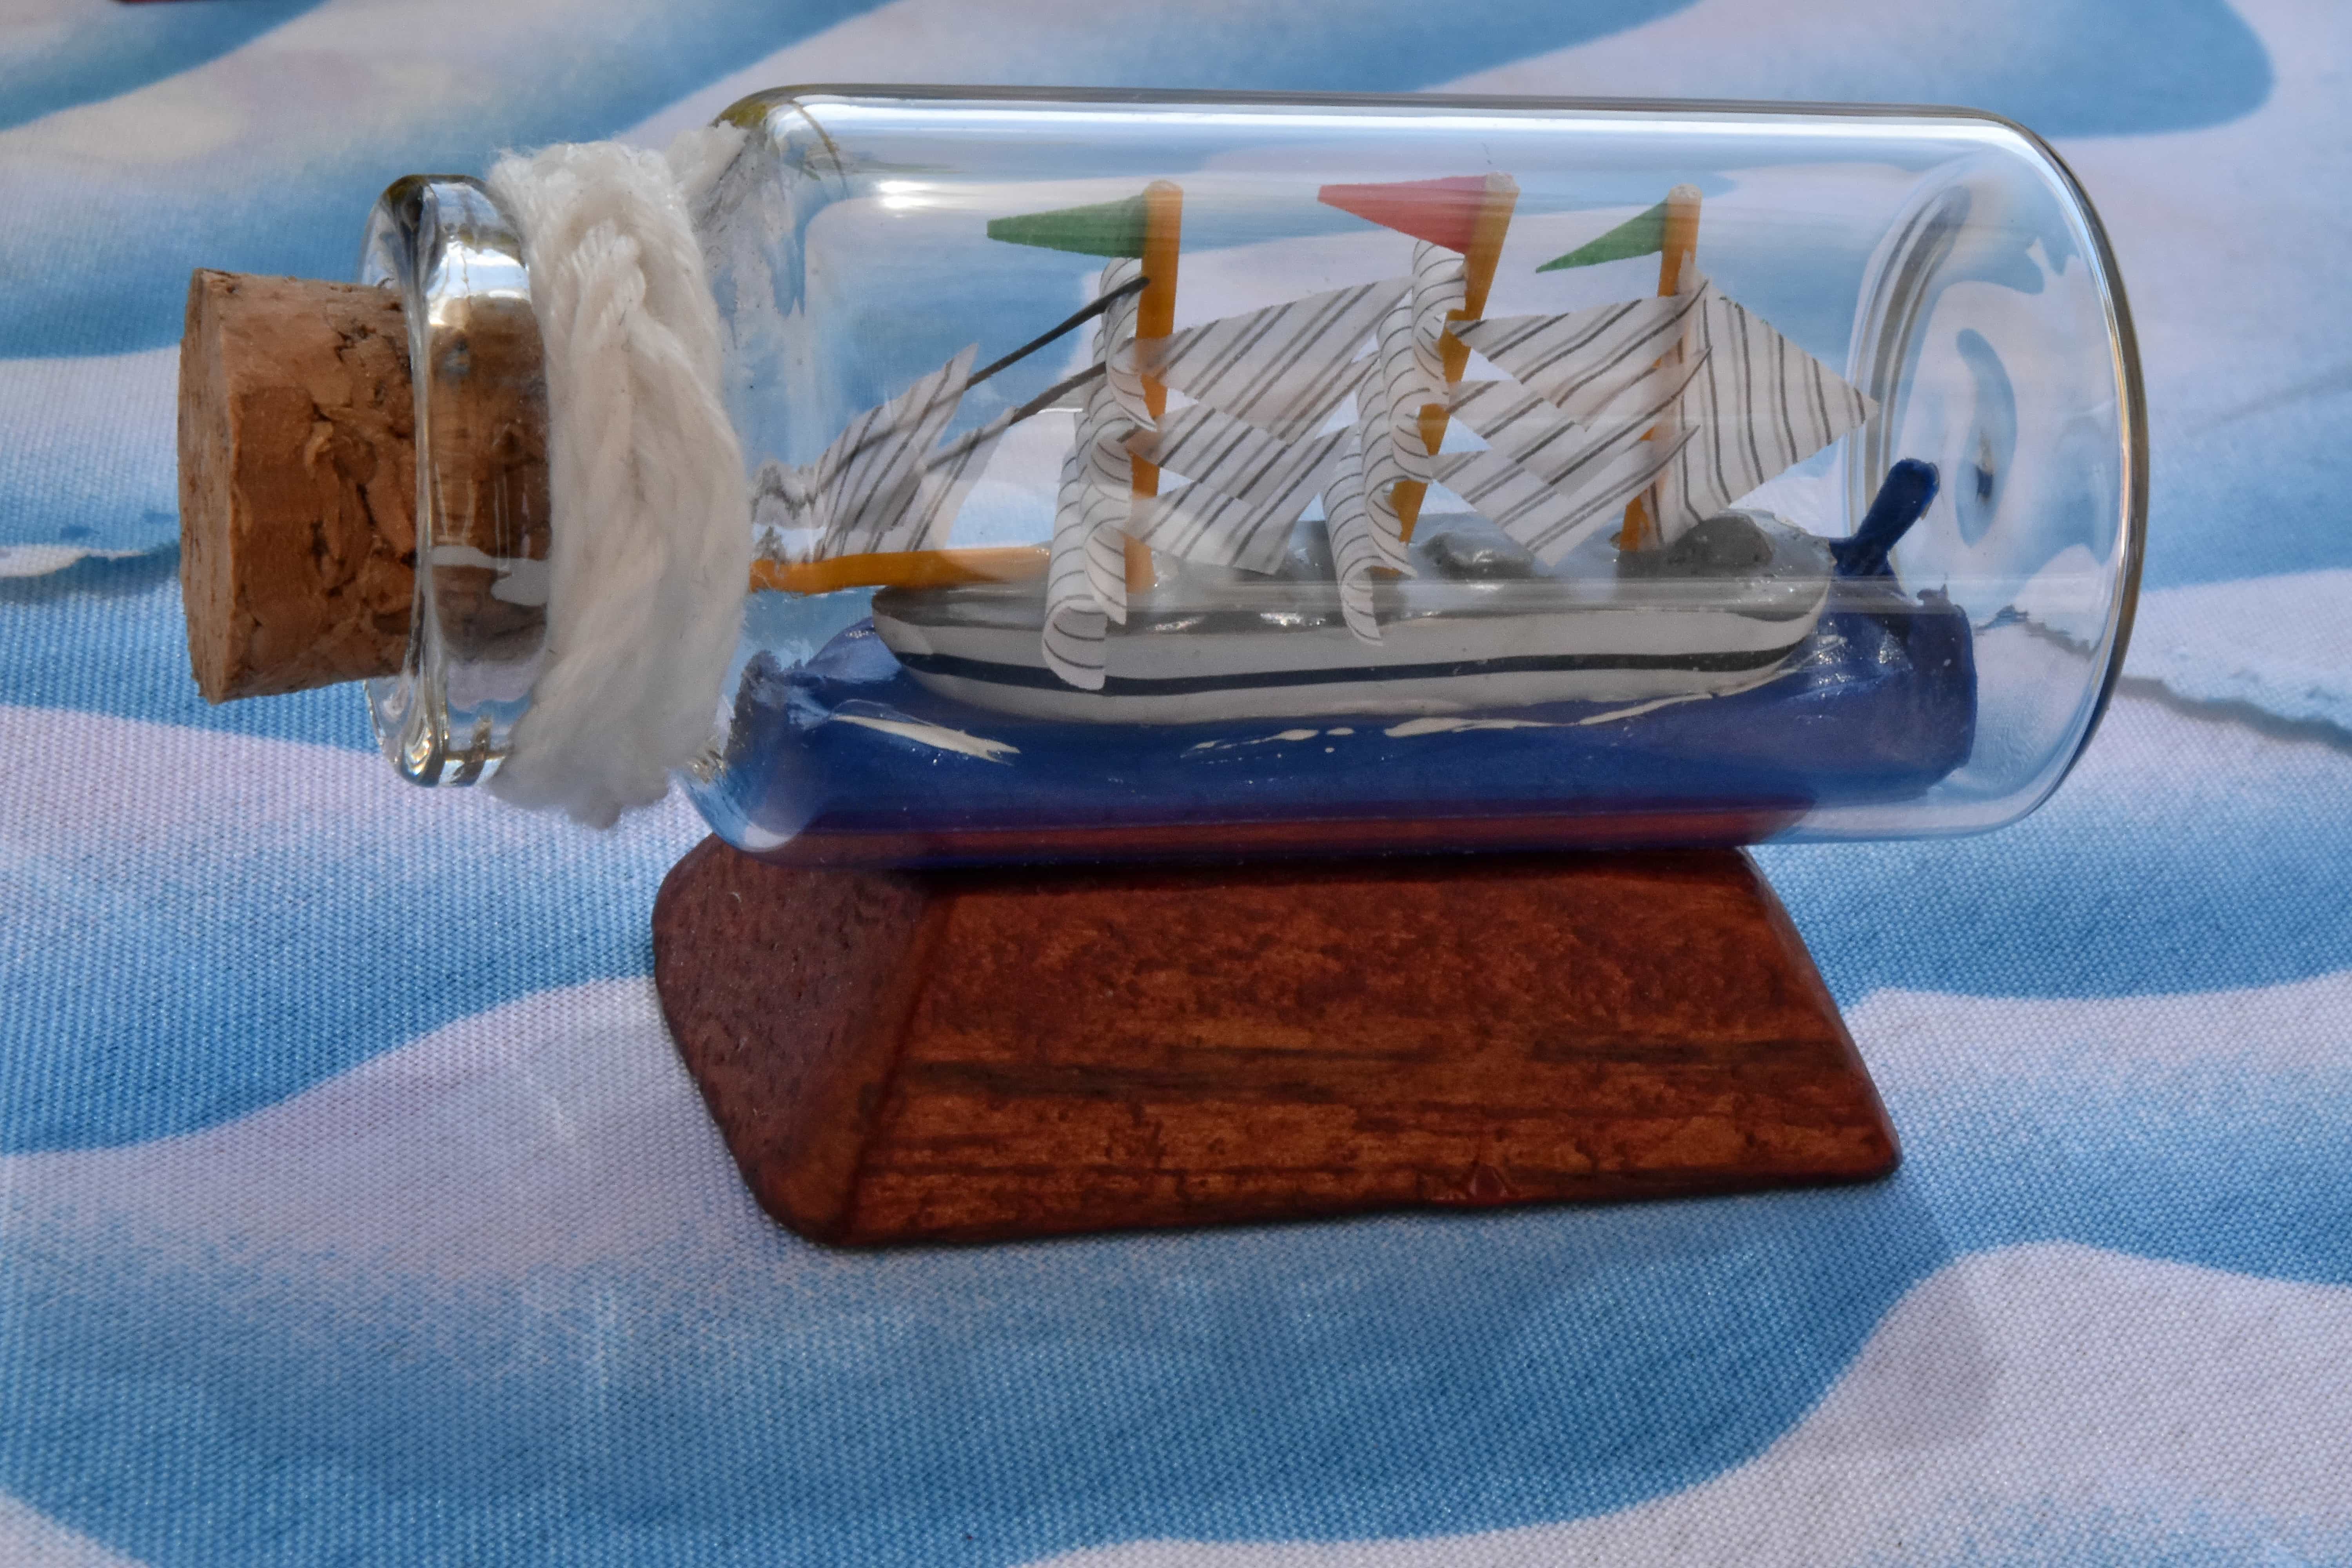 フリー写真画像 ボトル 詳細 ガラス 手作り ミニチュア ミニマリズム オブジェクト 反射 船 おもちゃ